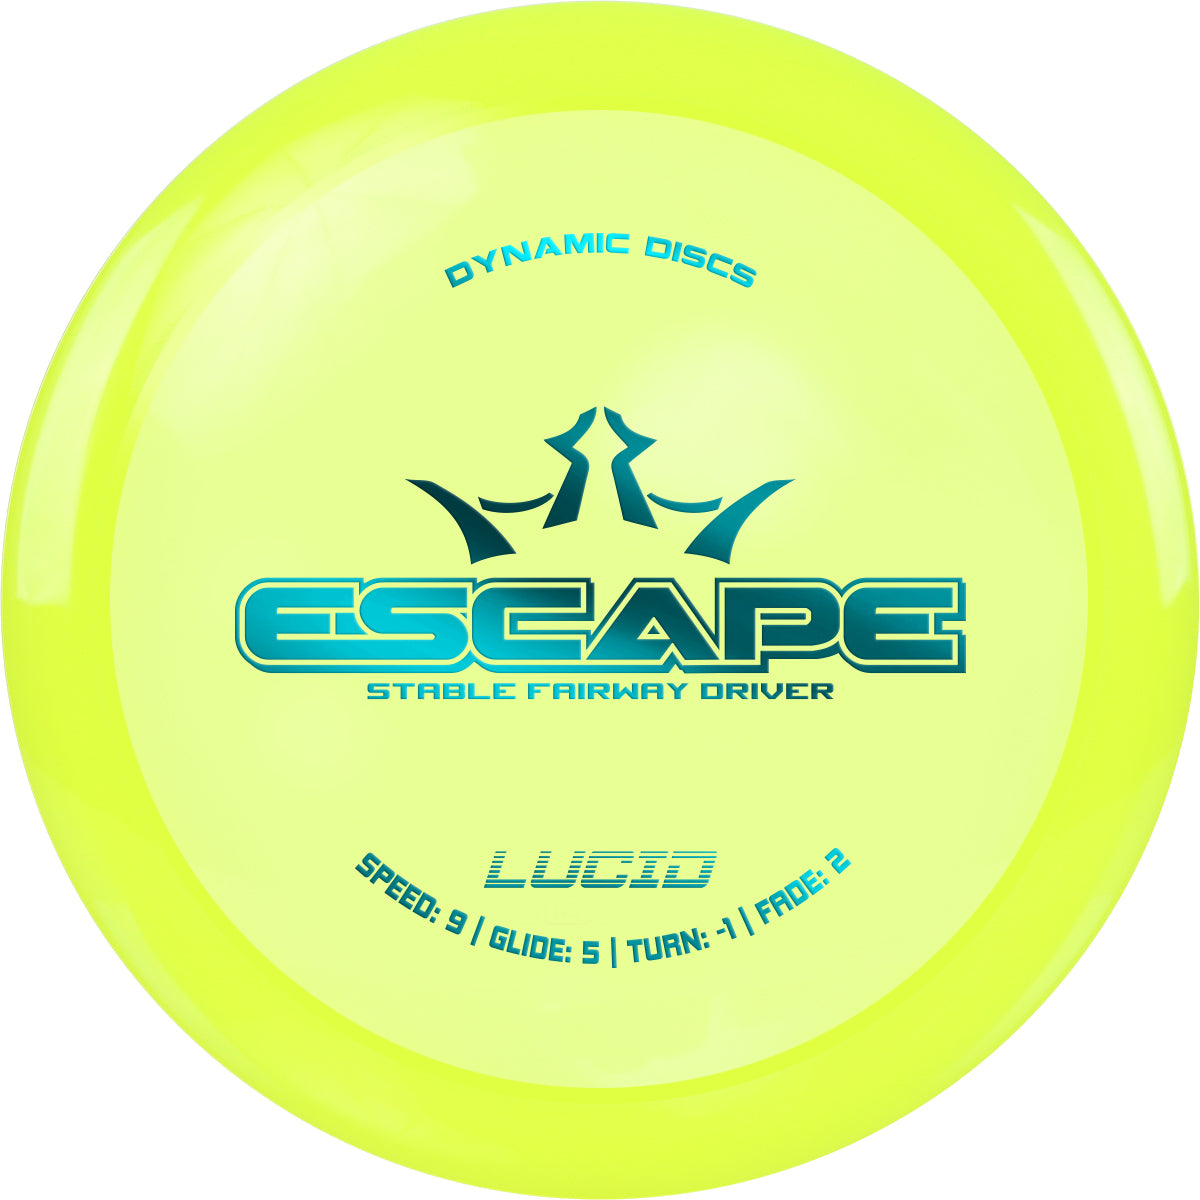 Lucid Escape (6586061488193)